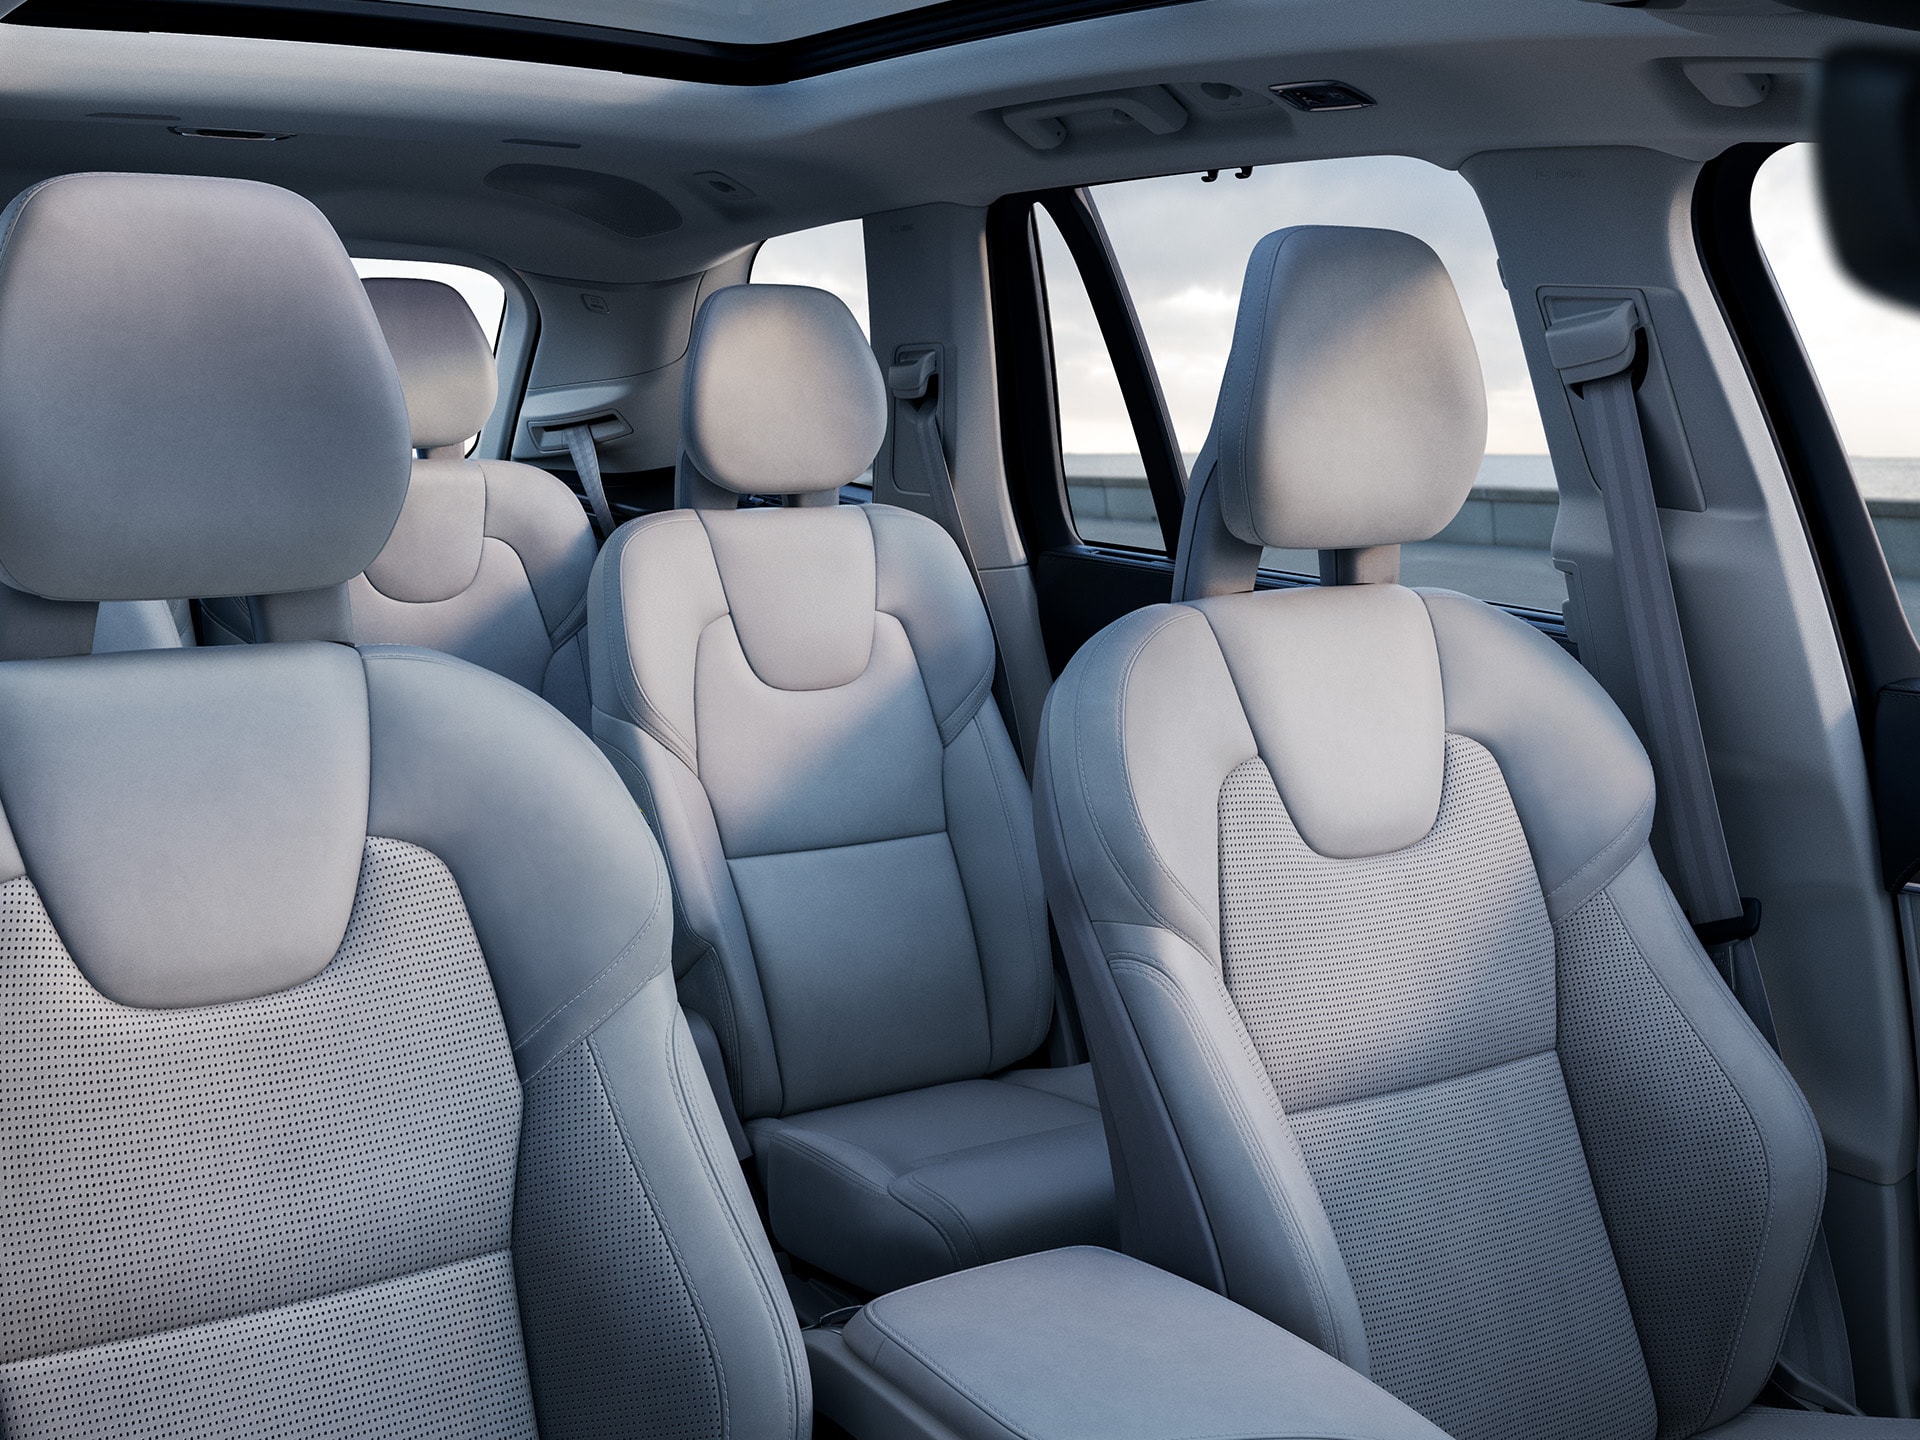 Dentro de un Volvo SUV con 3 filas, interior color claro en los asientos